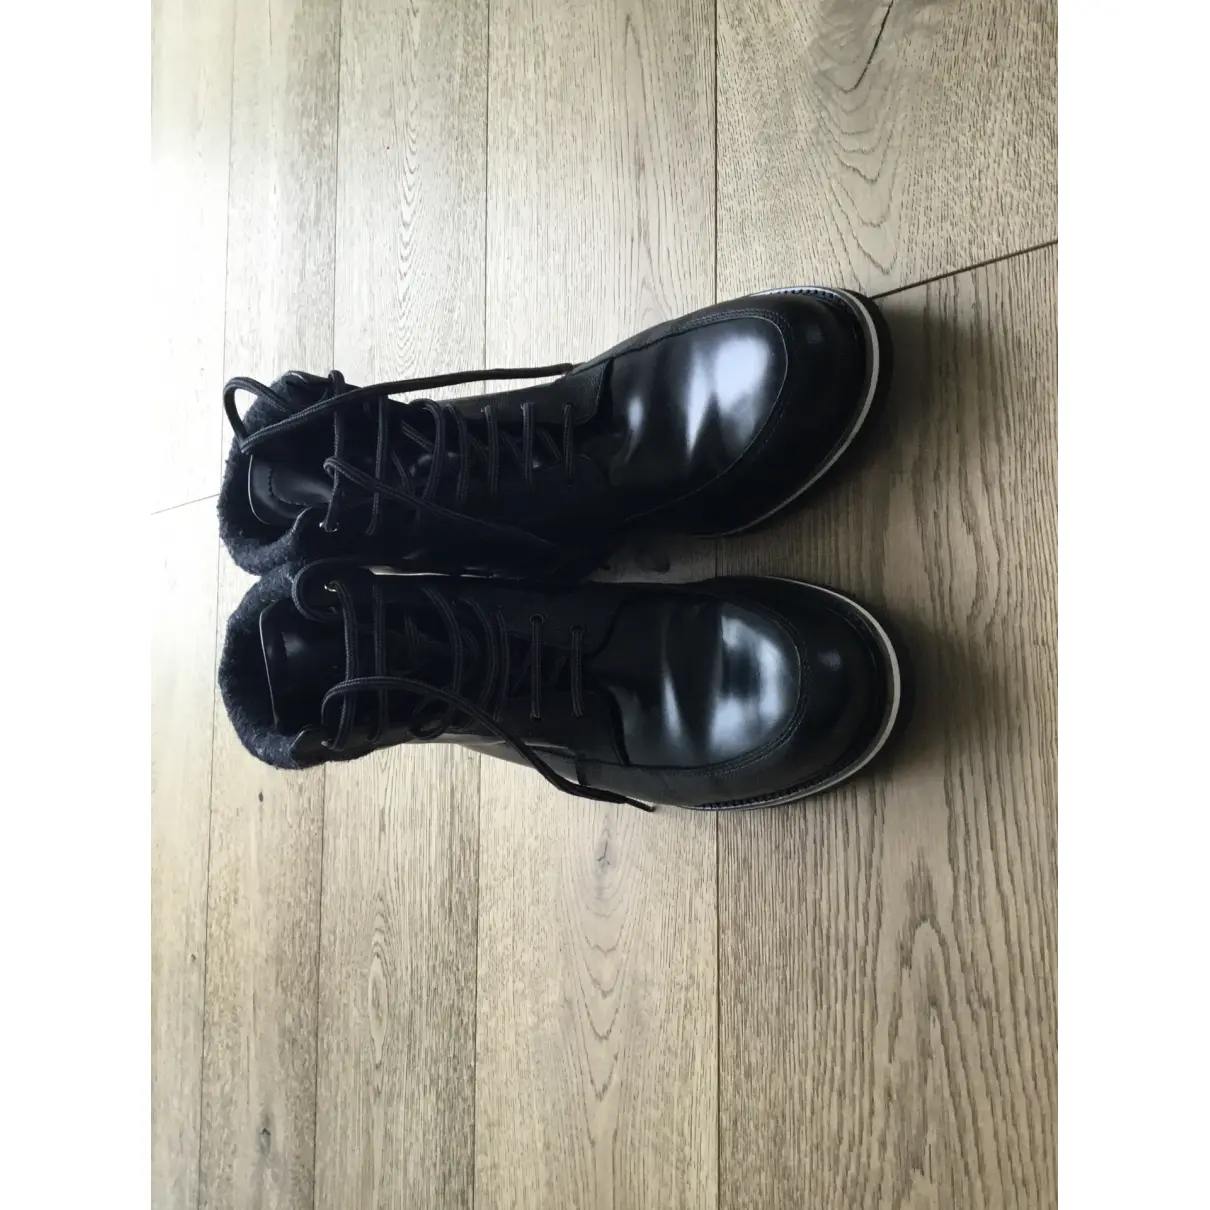 Buy Want Les Essentiels De La Vie Leather boots online